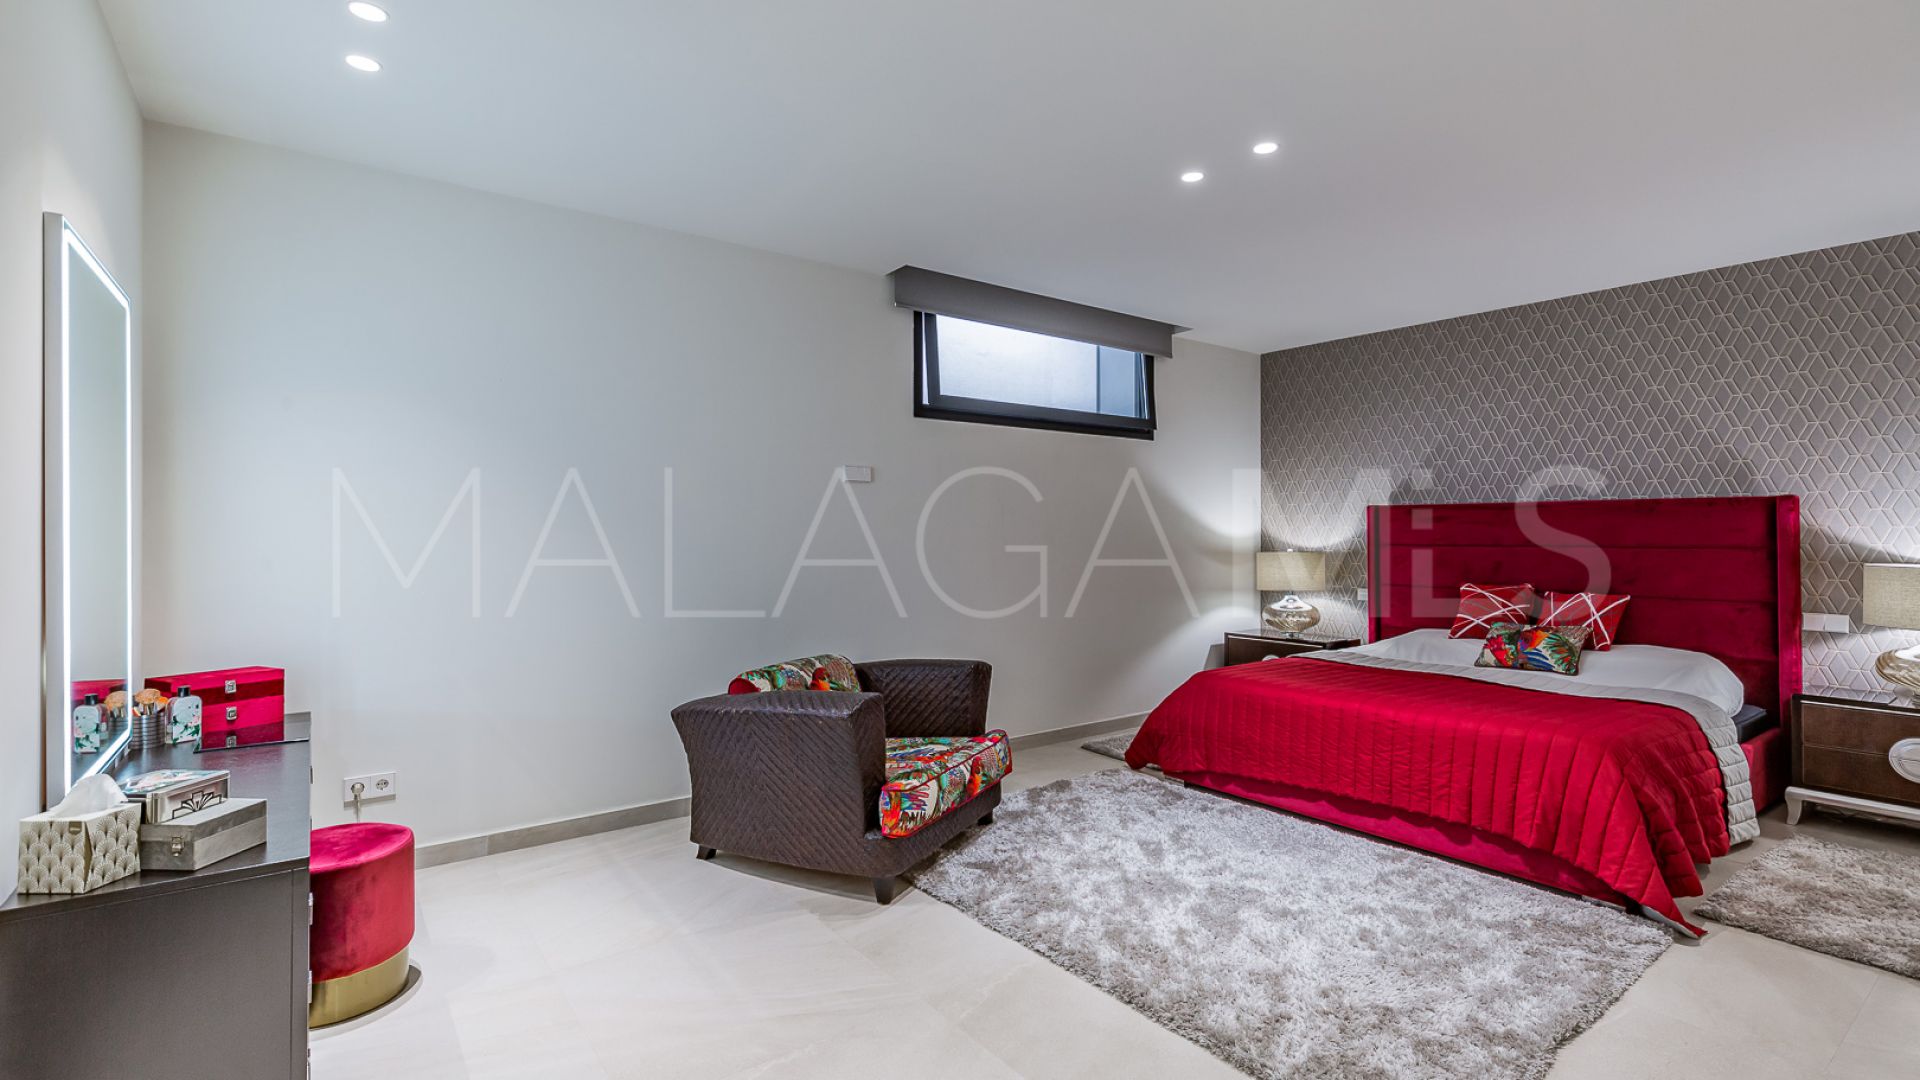 Villa with 5 bedrooms for sale in Casablanca